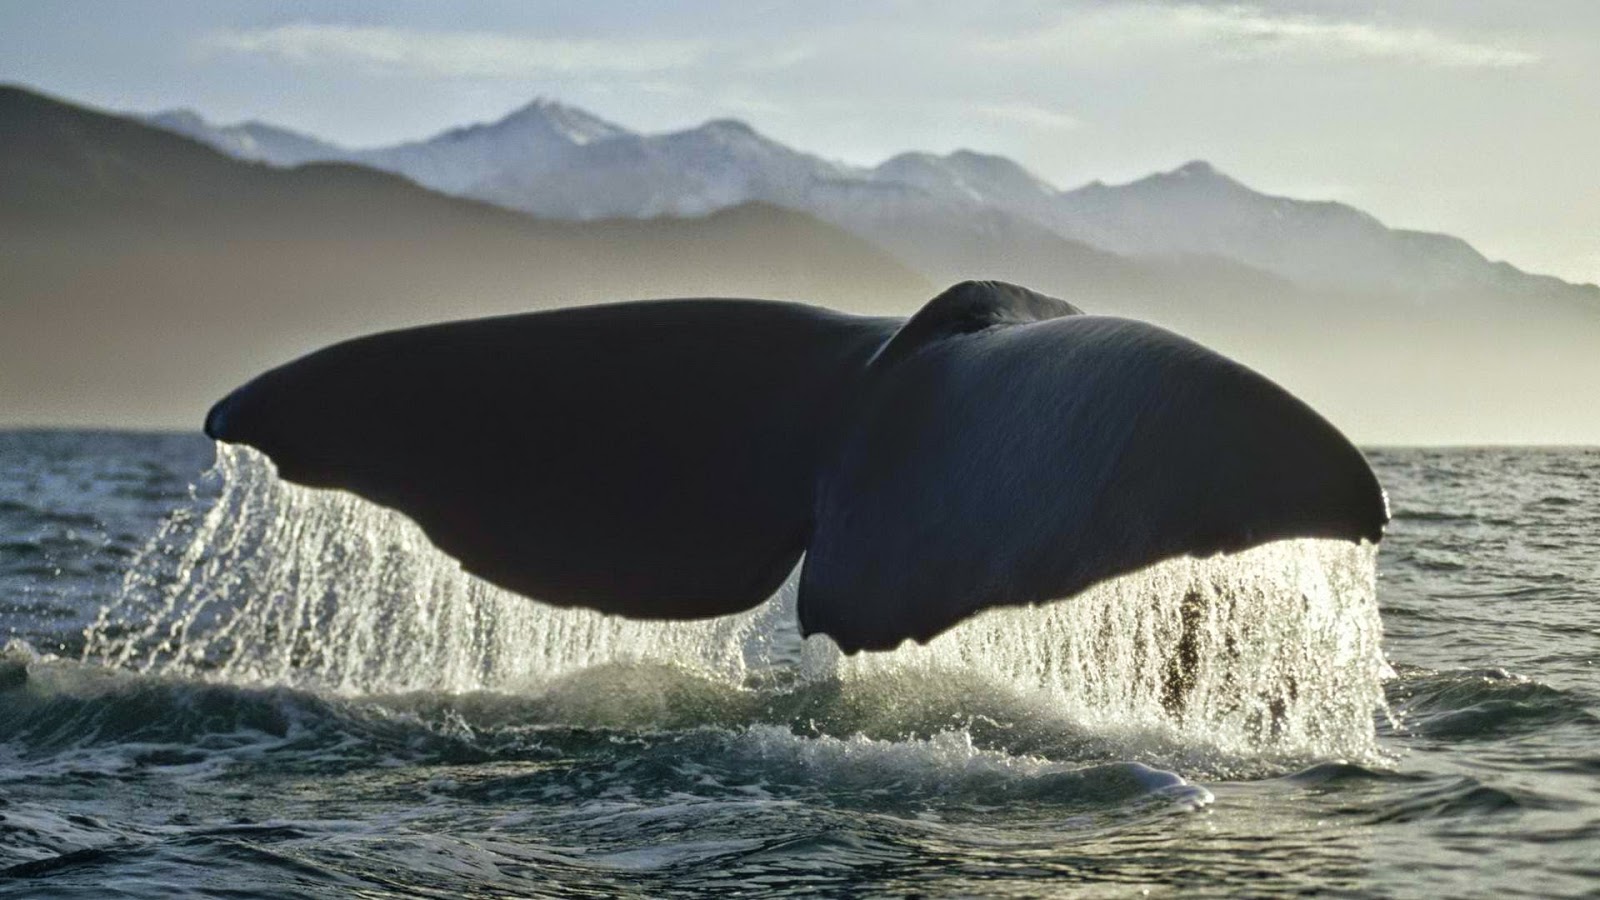 balena blu wallpaper hd,mammifero marino,balena,megattera,balena assassina,bowhead